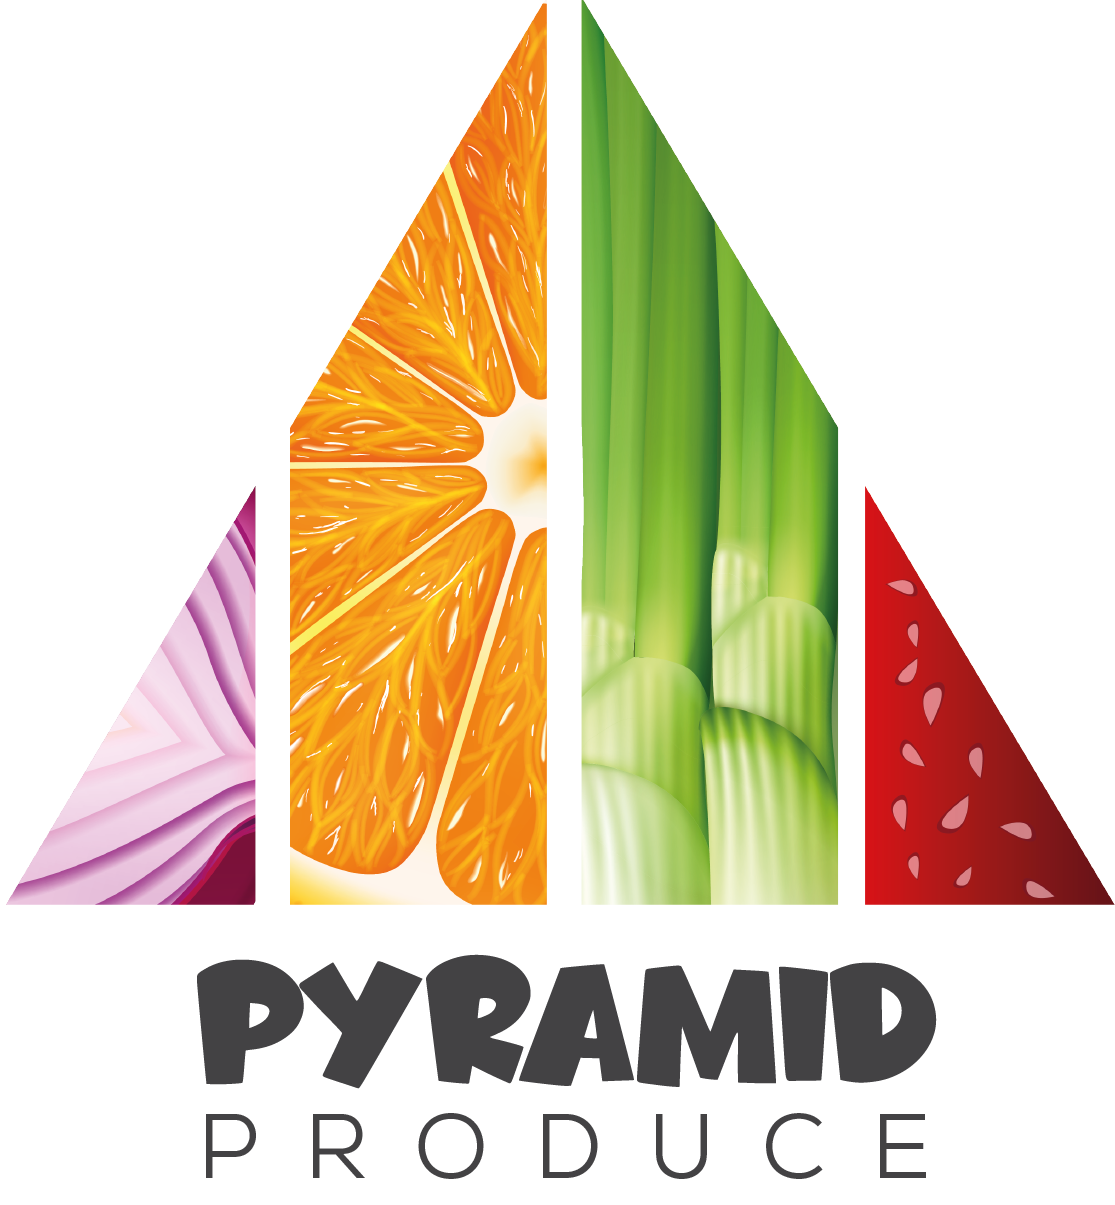 PyramidProduce